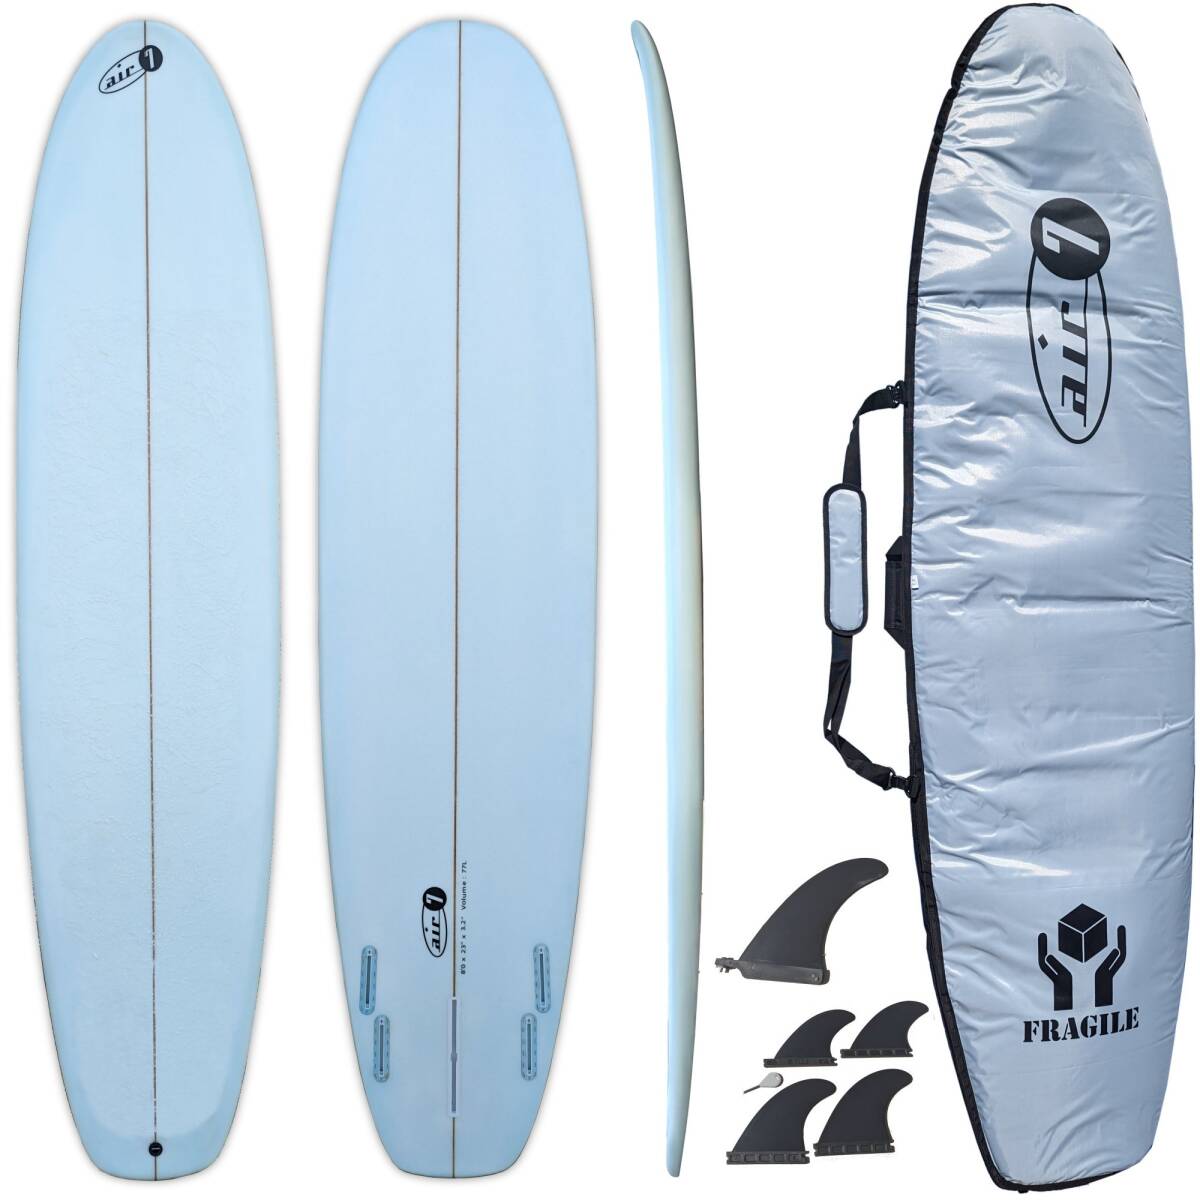 8'0 244cm サーフボード Surfboard ケース 付き 取り外し可能 フィン 5枚 付き ロングボード セット エポキシ 初心者 から 上級者 まで 77L